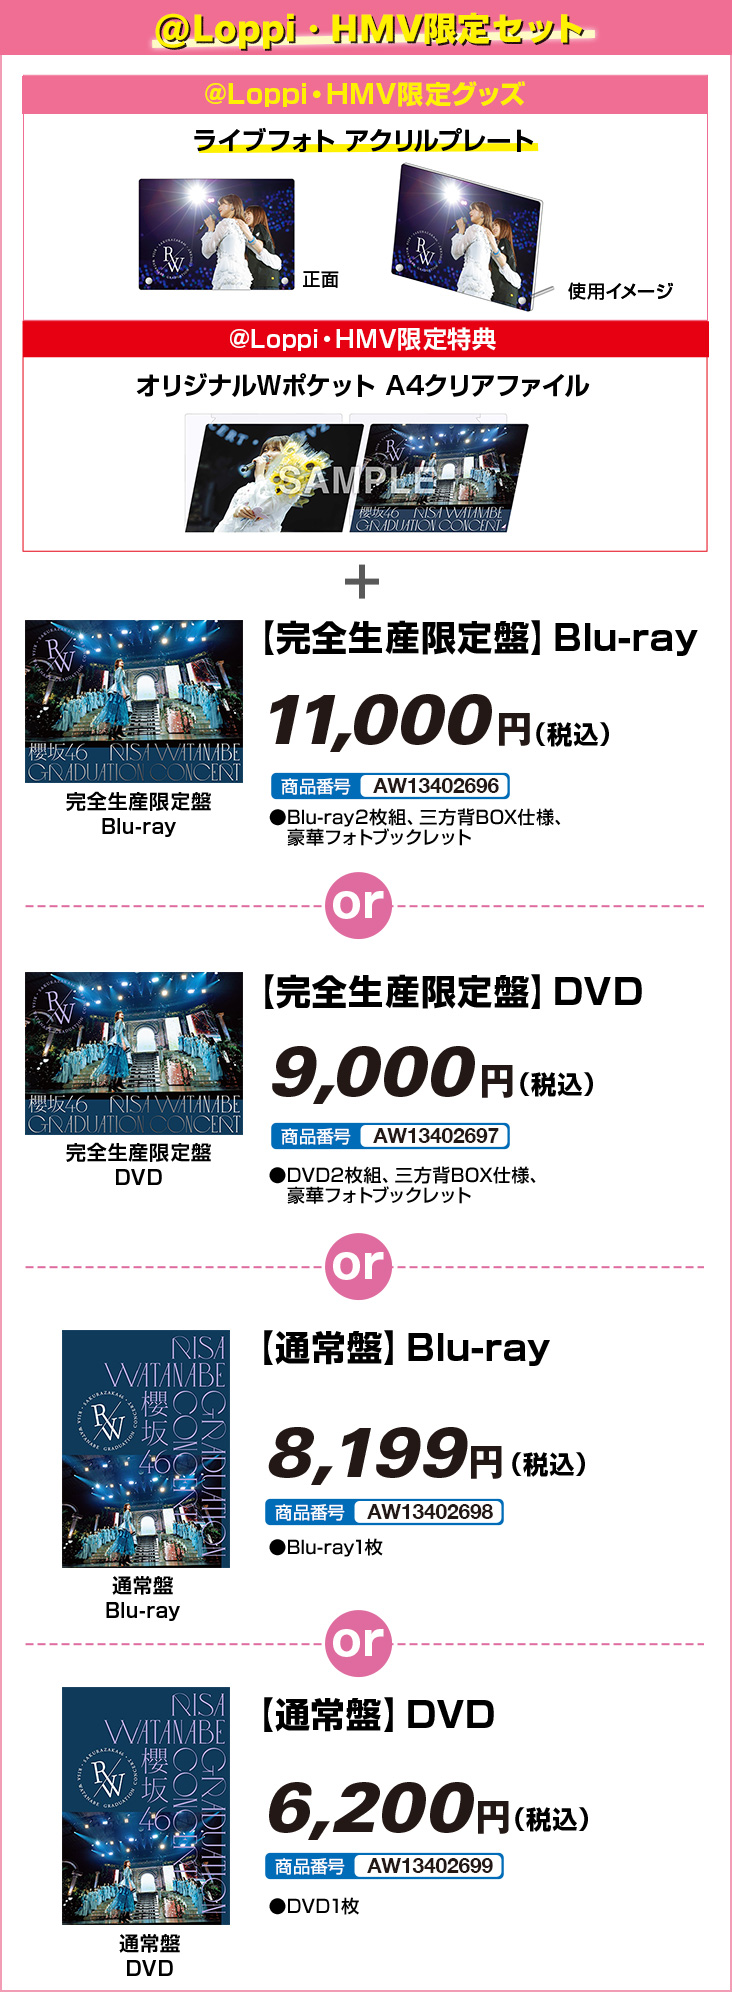 櫻坂46 RISA WATANABE GRADUATION CONCERT Blu-ray＆DVD @Loppi・HMV限定セット